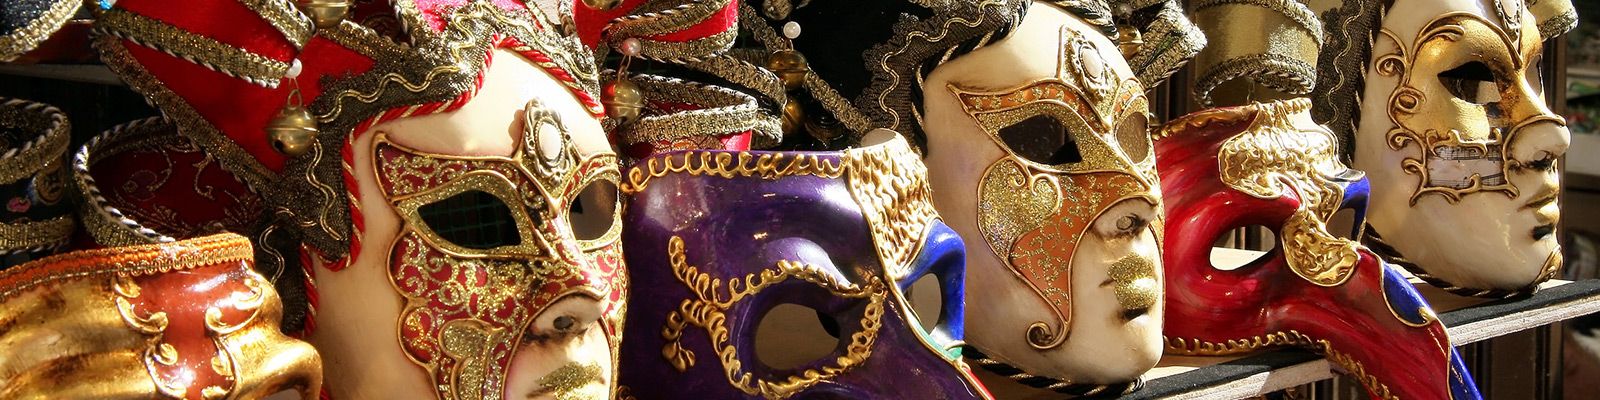 Verzierte venezianische Masken